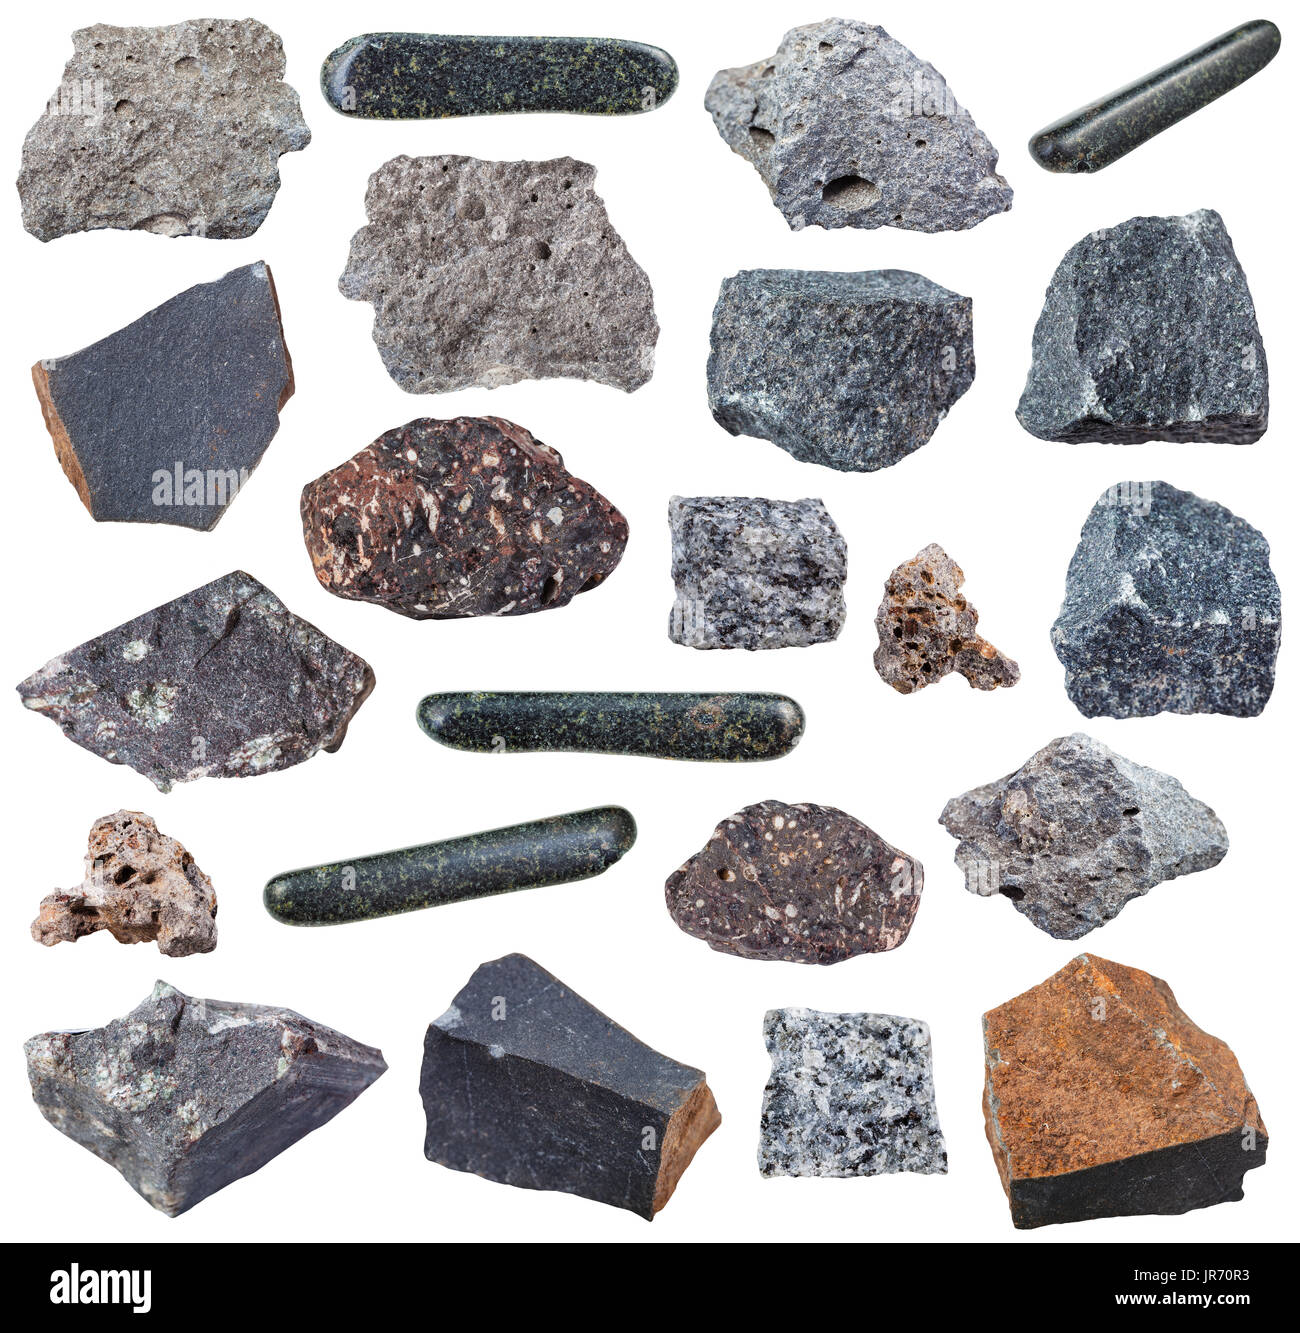 Sammlung von verschiedenen Basalt magmatischen Gesteine (Basalt, Gabbro, Tachylite, Tachylyte, Tholeiite, Glassbasalt, Hyalobasalt usw.) isoliert auf weißem staatlich Stockfoto